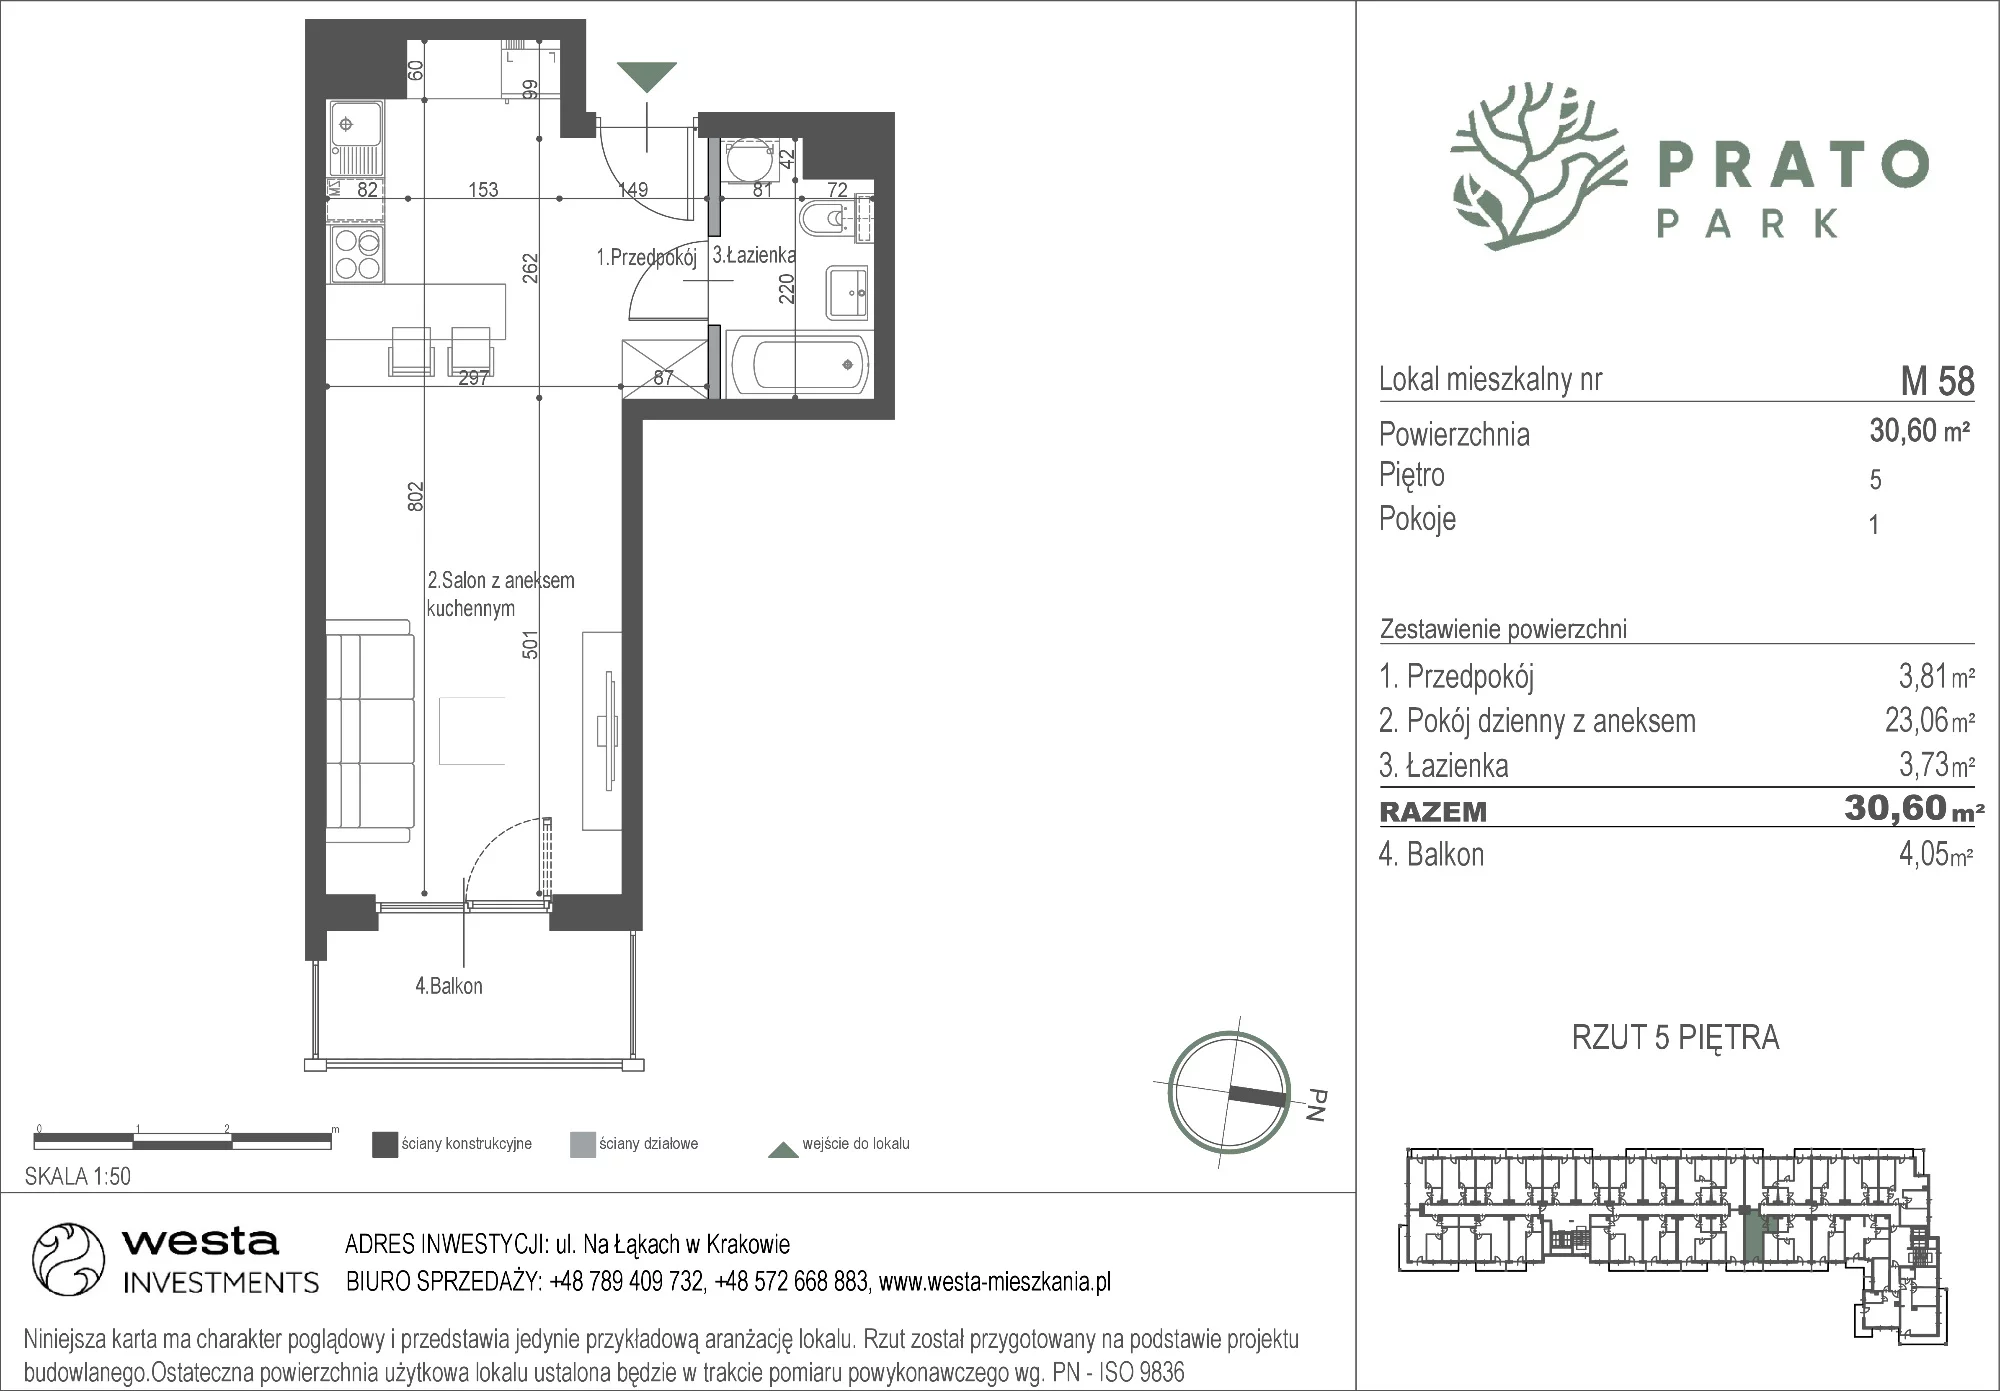 Mieszkanie 30,60 m², piętro 5, oferta nr M58, Prato Park, Kraków, Czyżyny, ul. Na Łąkach